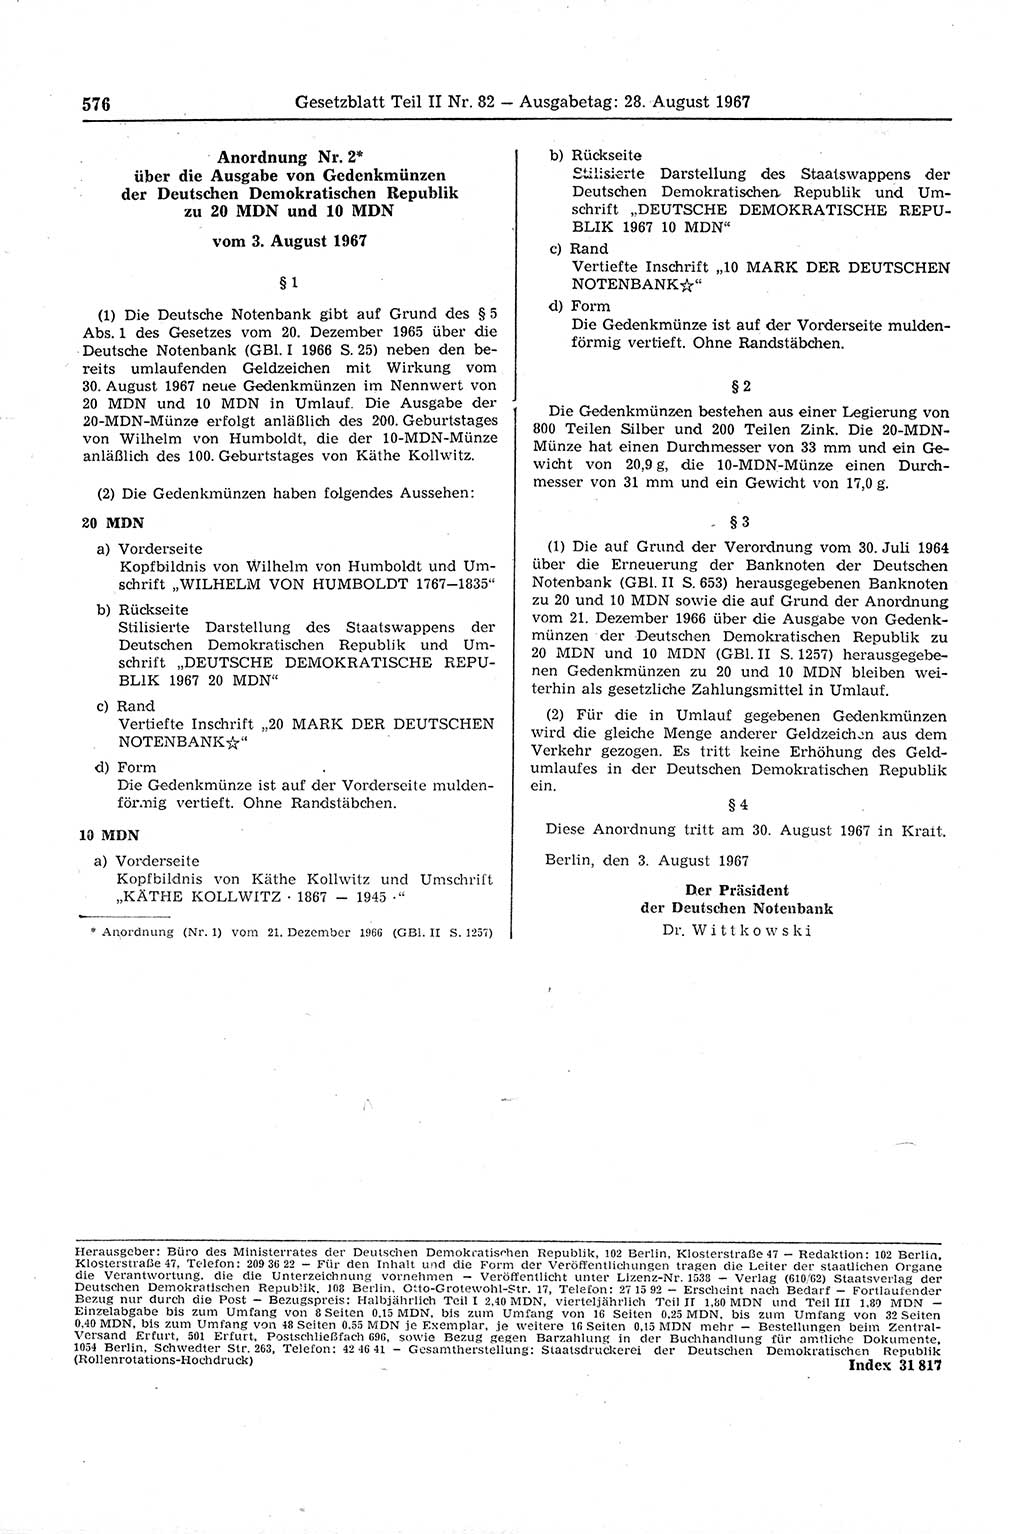 Gesetzblatt (GBl.) der Deutschen Demokratischen Republik (DDR) Teil ⅠⅠ 1967, Seite 576 (GBl. DDR ⅠⅠ 1967, S. 576)